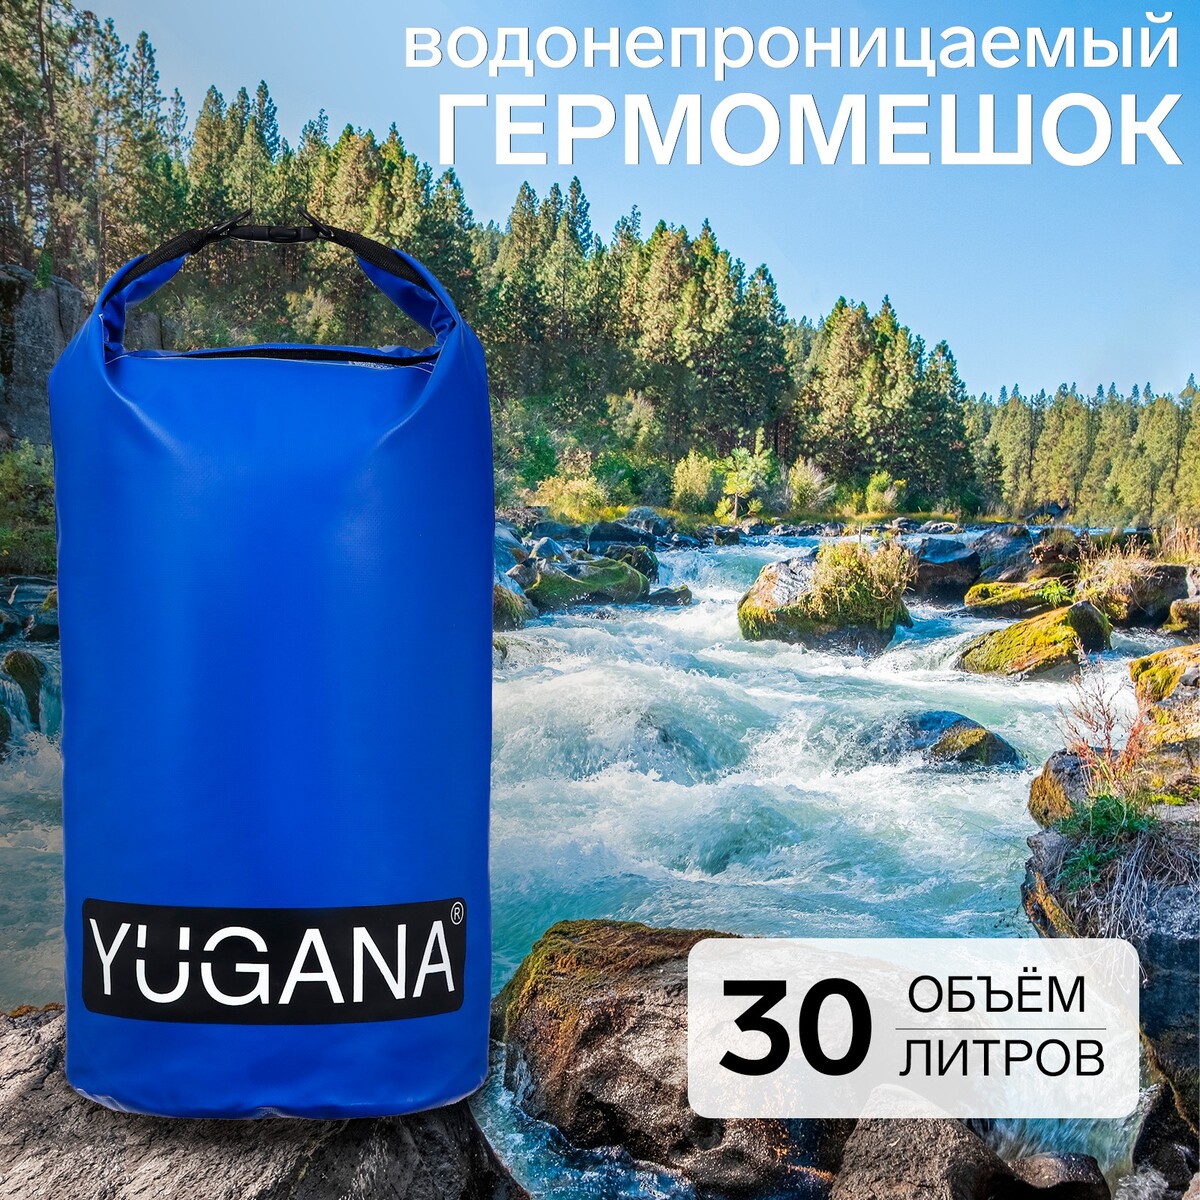 Гермомешок yugana, пвх, водонепроницаемый 30 литров, два ремня, синий комплект из блока и ремня для йоги star fit yb 205 синий пастель